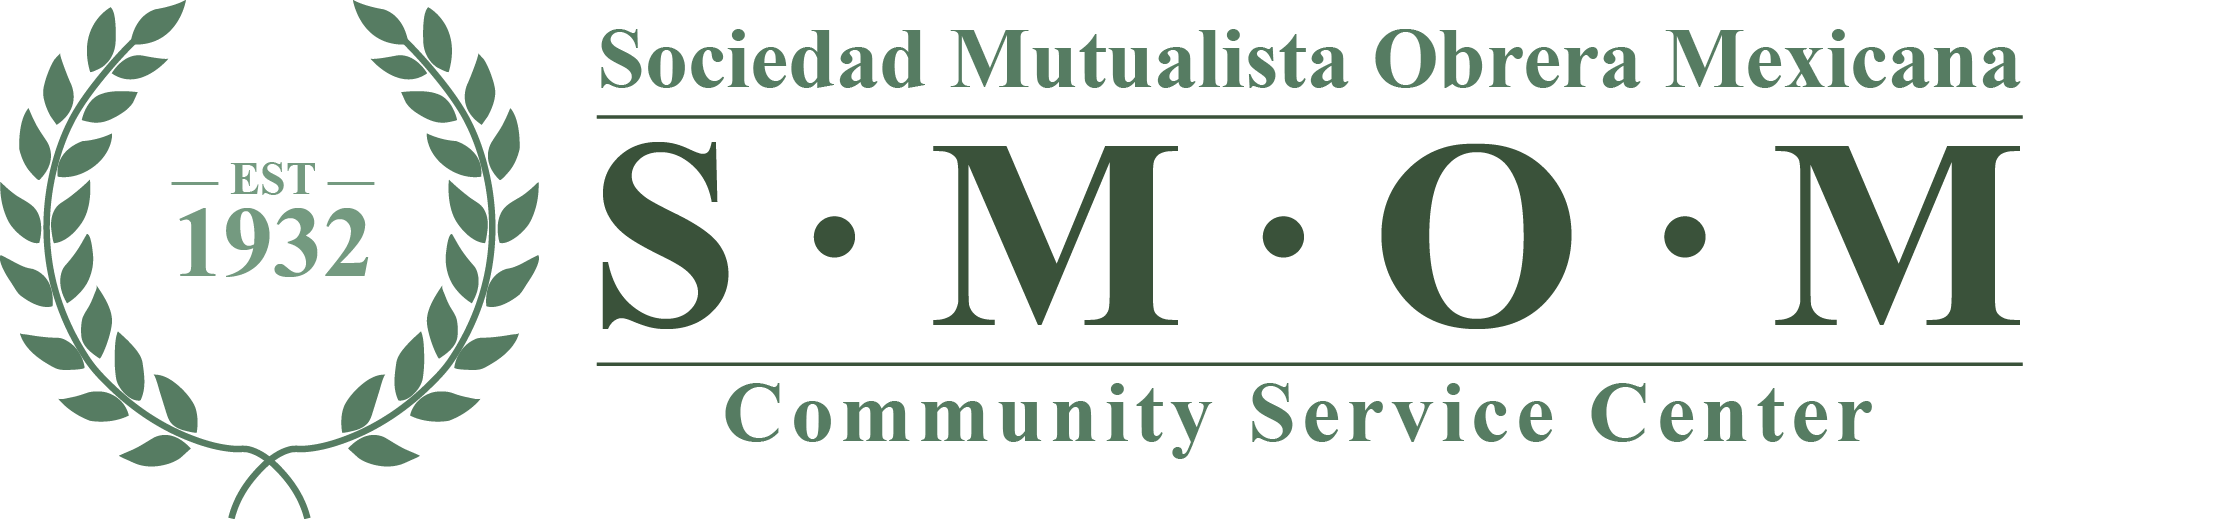 Sociedad Mutualista Obrera Mexicana